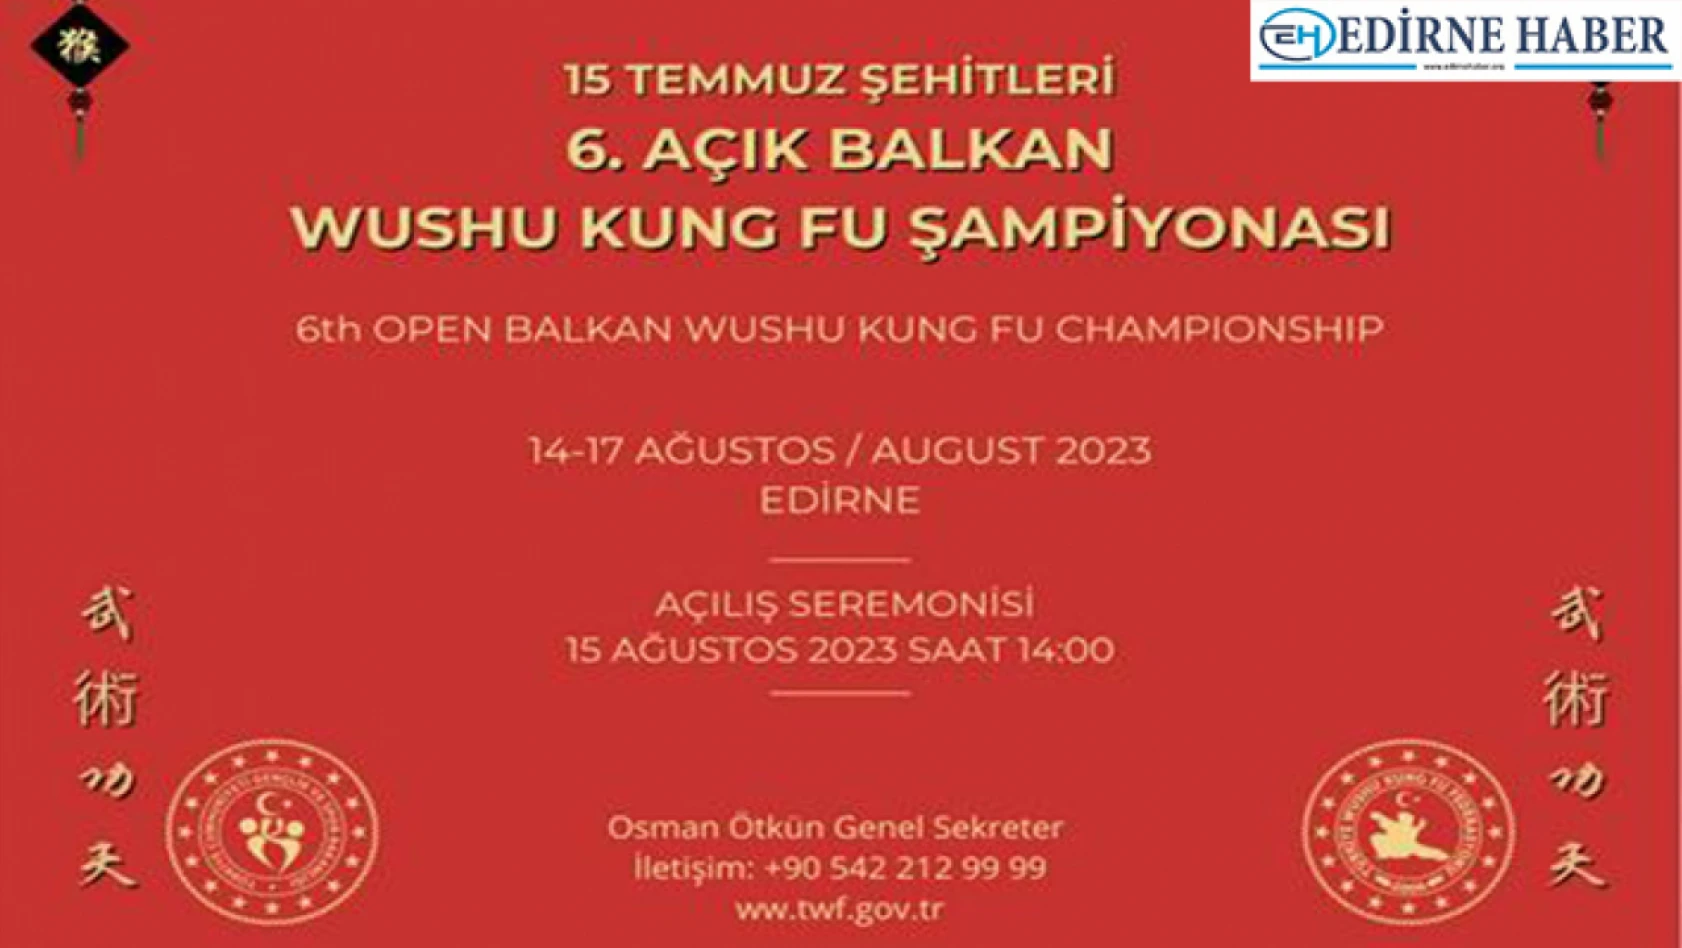 15 Temmuz Şehitleri 6. Açık Balkan Wushu Kung Fu Şampiyonası başlıyor